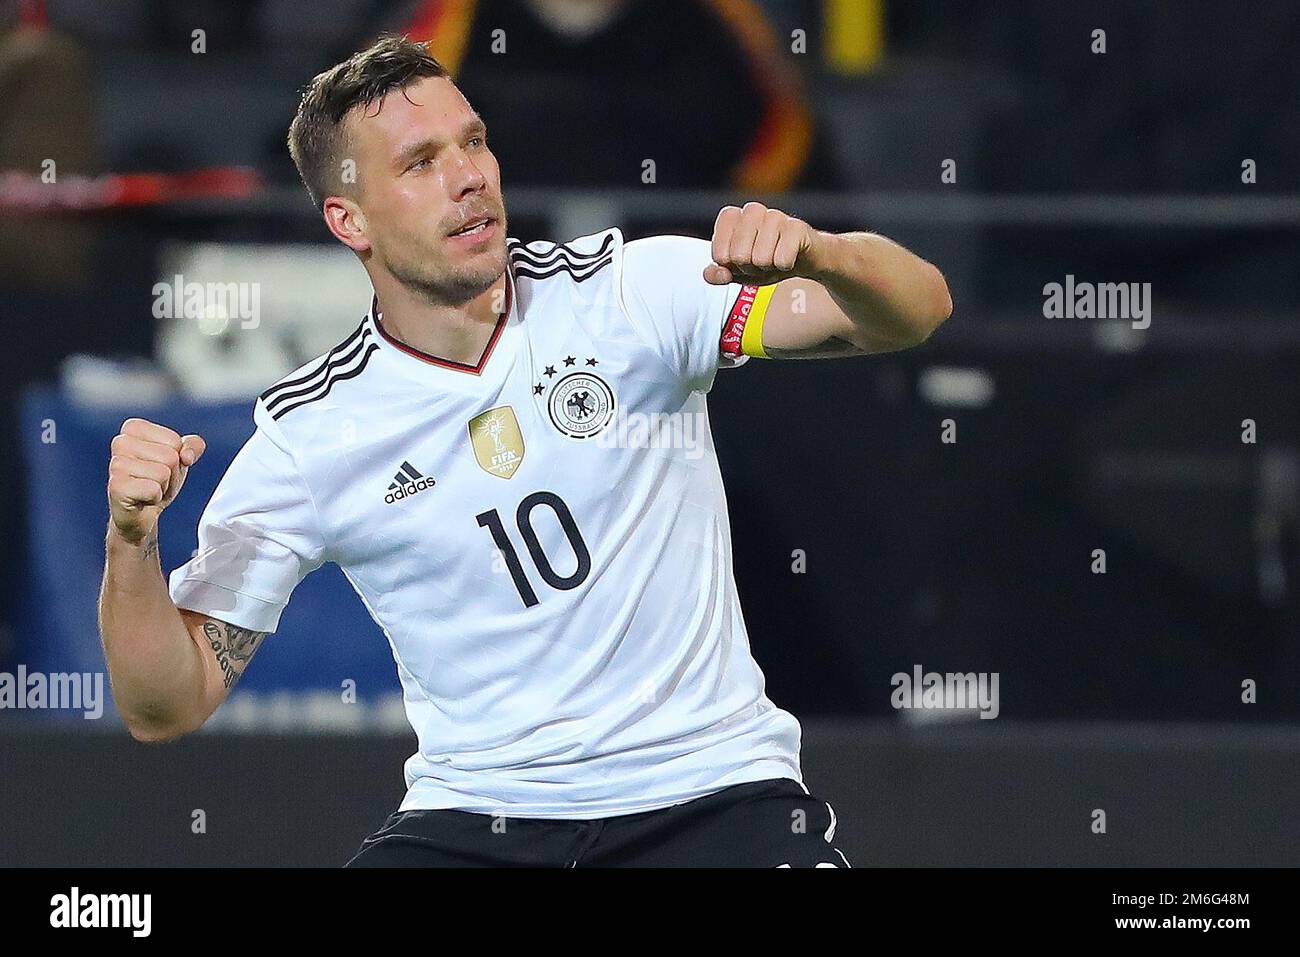 Lukas Podolski aus Deutschland feiert, nachdem er das Siegertor geschossen hat und es 1-0 geschafft hat – Deutschland gegen England, International Friendly, Signal Iduna Park, Dortmund – 22. März 2017. Stockfoto